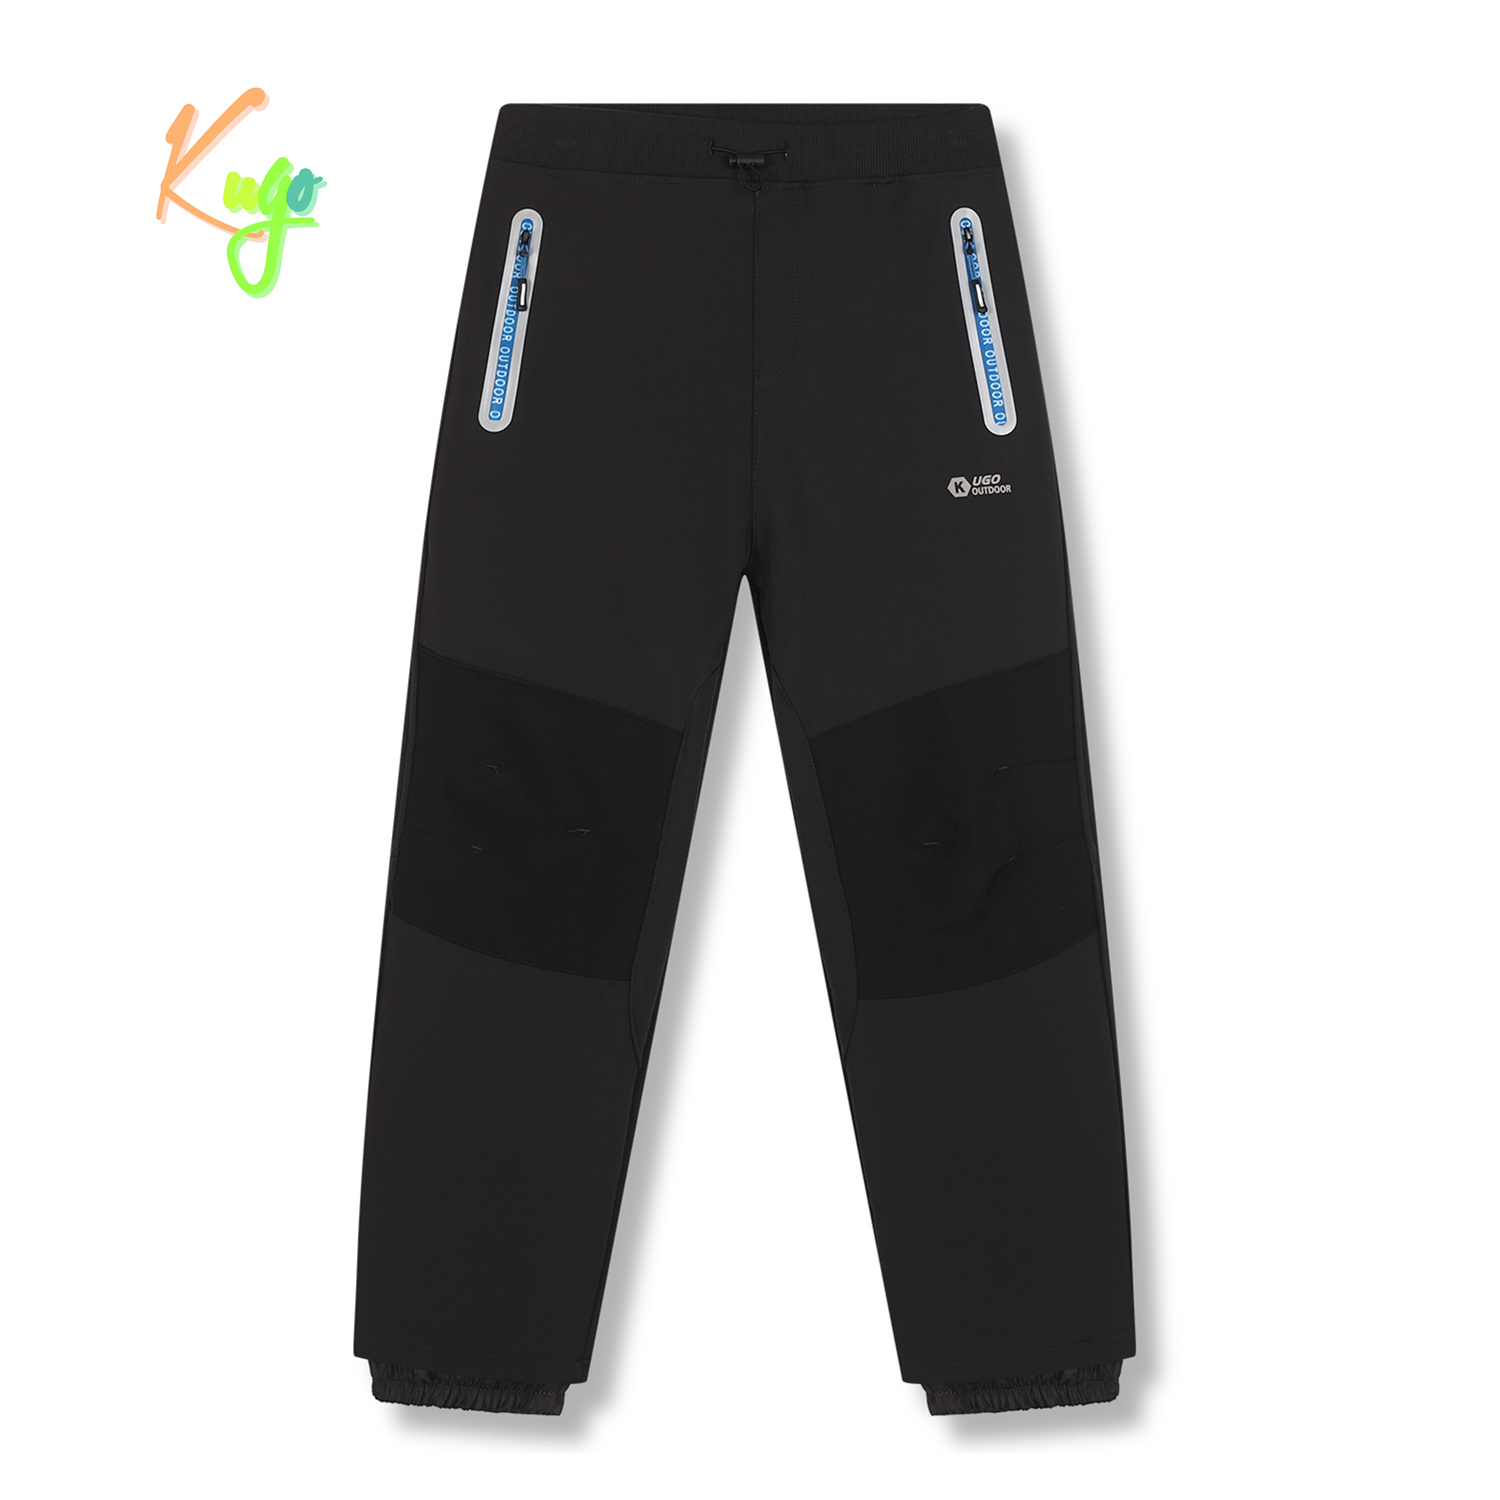 Chlapecké softshellové kalhoty, zateplené - KUGO HK5629, tmavě šedá / modré zipy Barva: Šedá, Velikost: 170